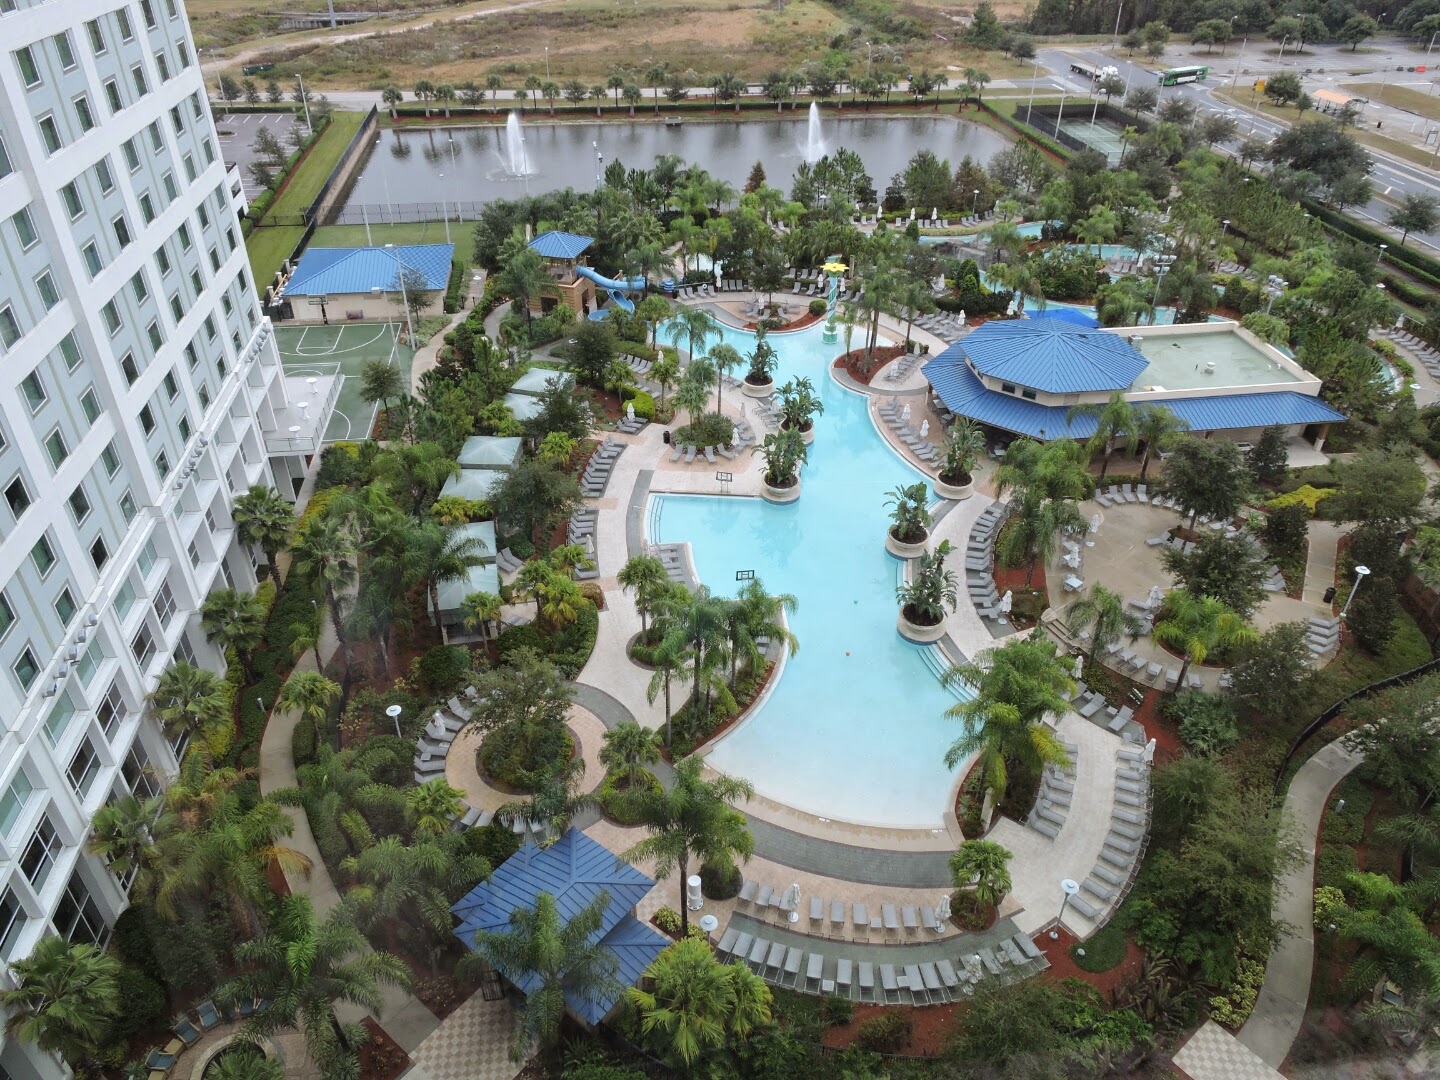 Our Time at the Hilton Orlando Hotel and Review #HiltonOrlando via www.productreviewmom.com